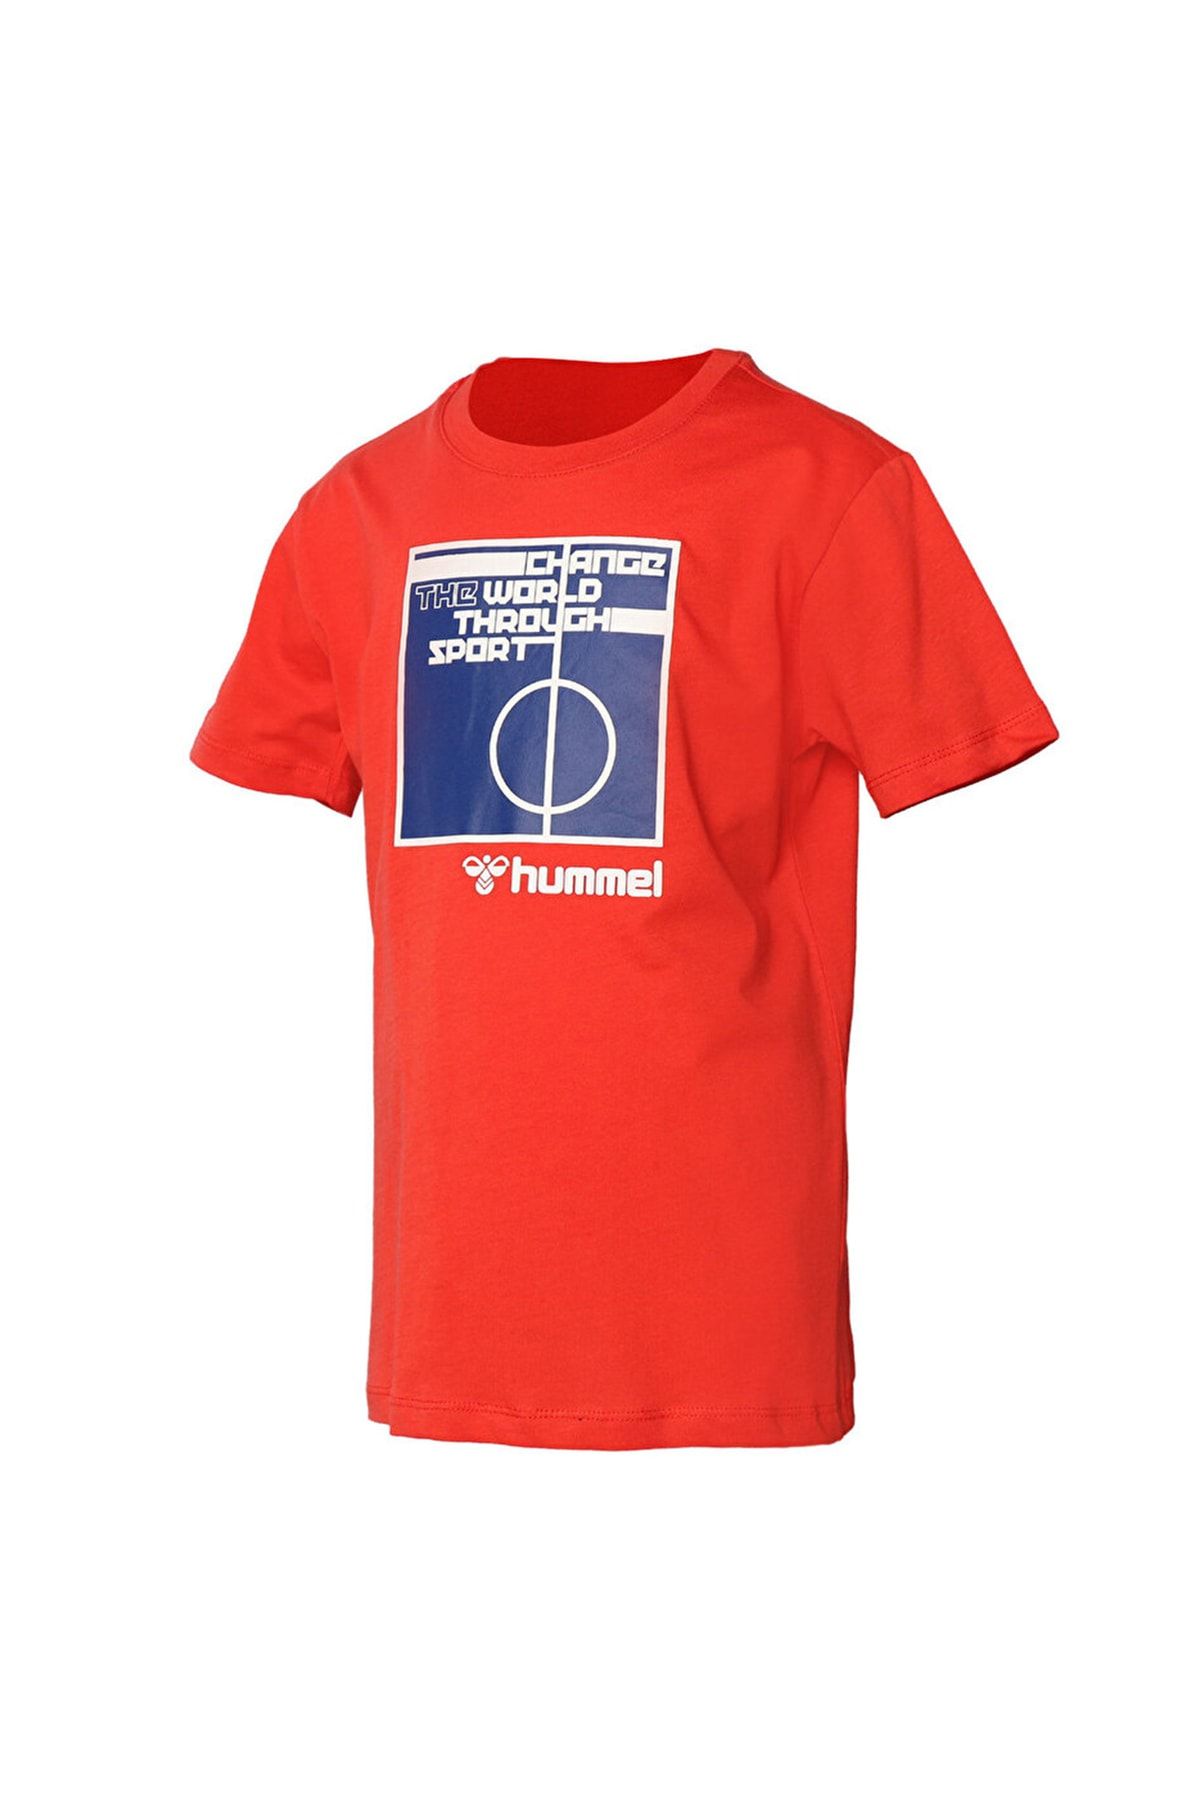 hummel Baskılı Kırmızı Erkek T-shirt 911598-1027 Hmlnala T-shırt S/s